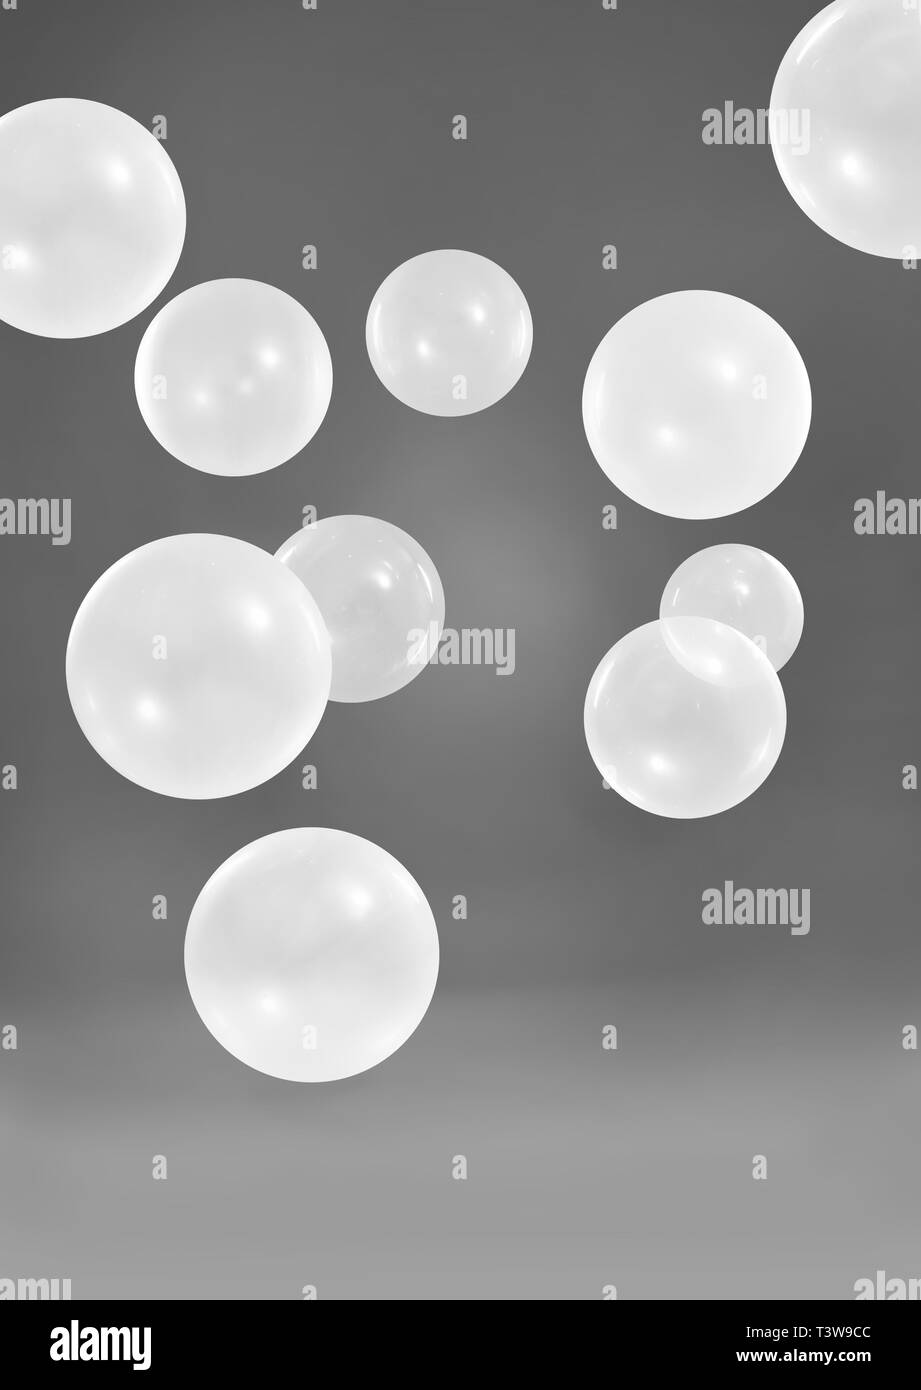 White balloons on dark grey background Stock Photo